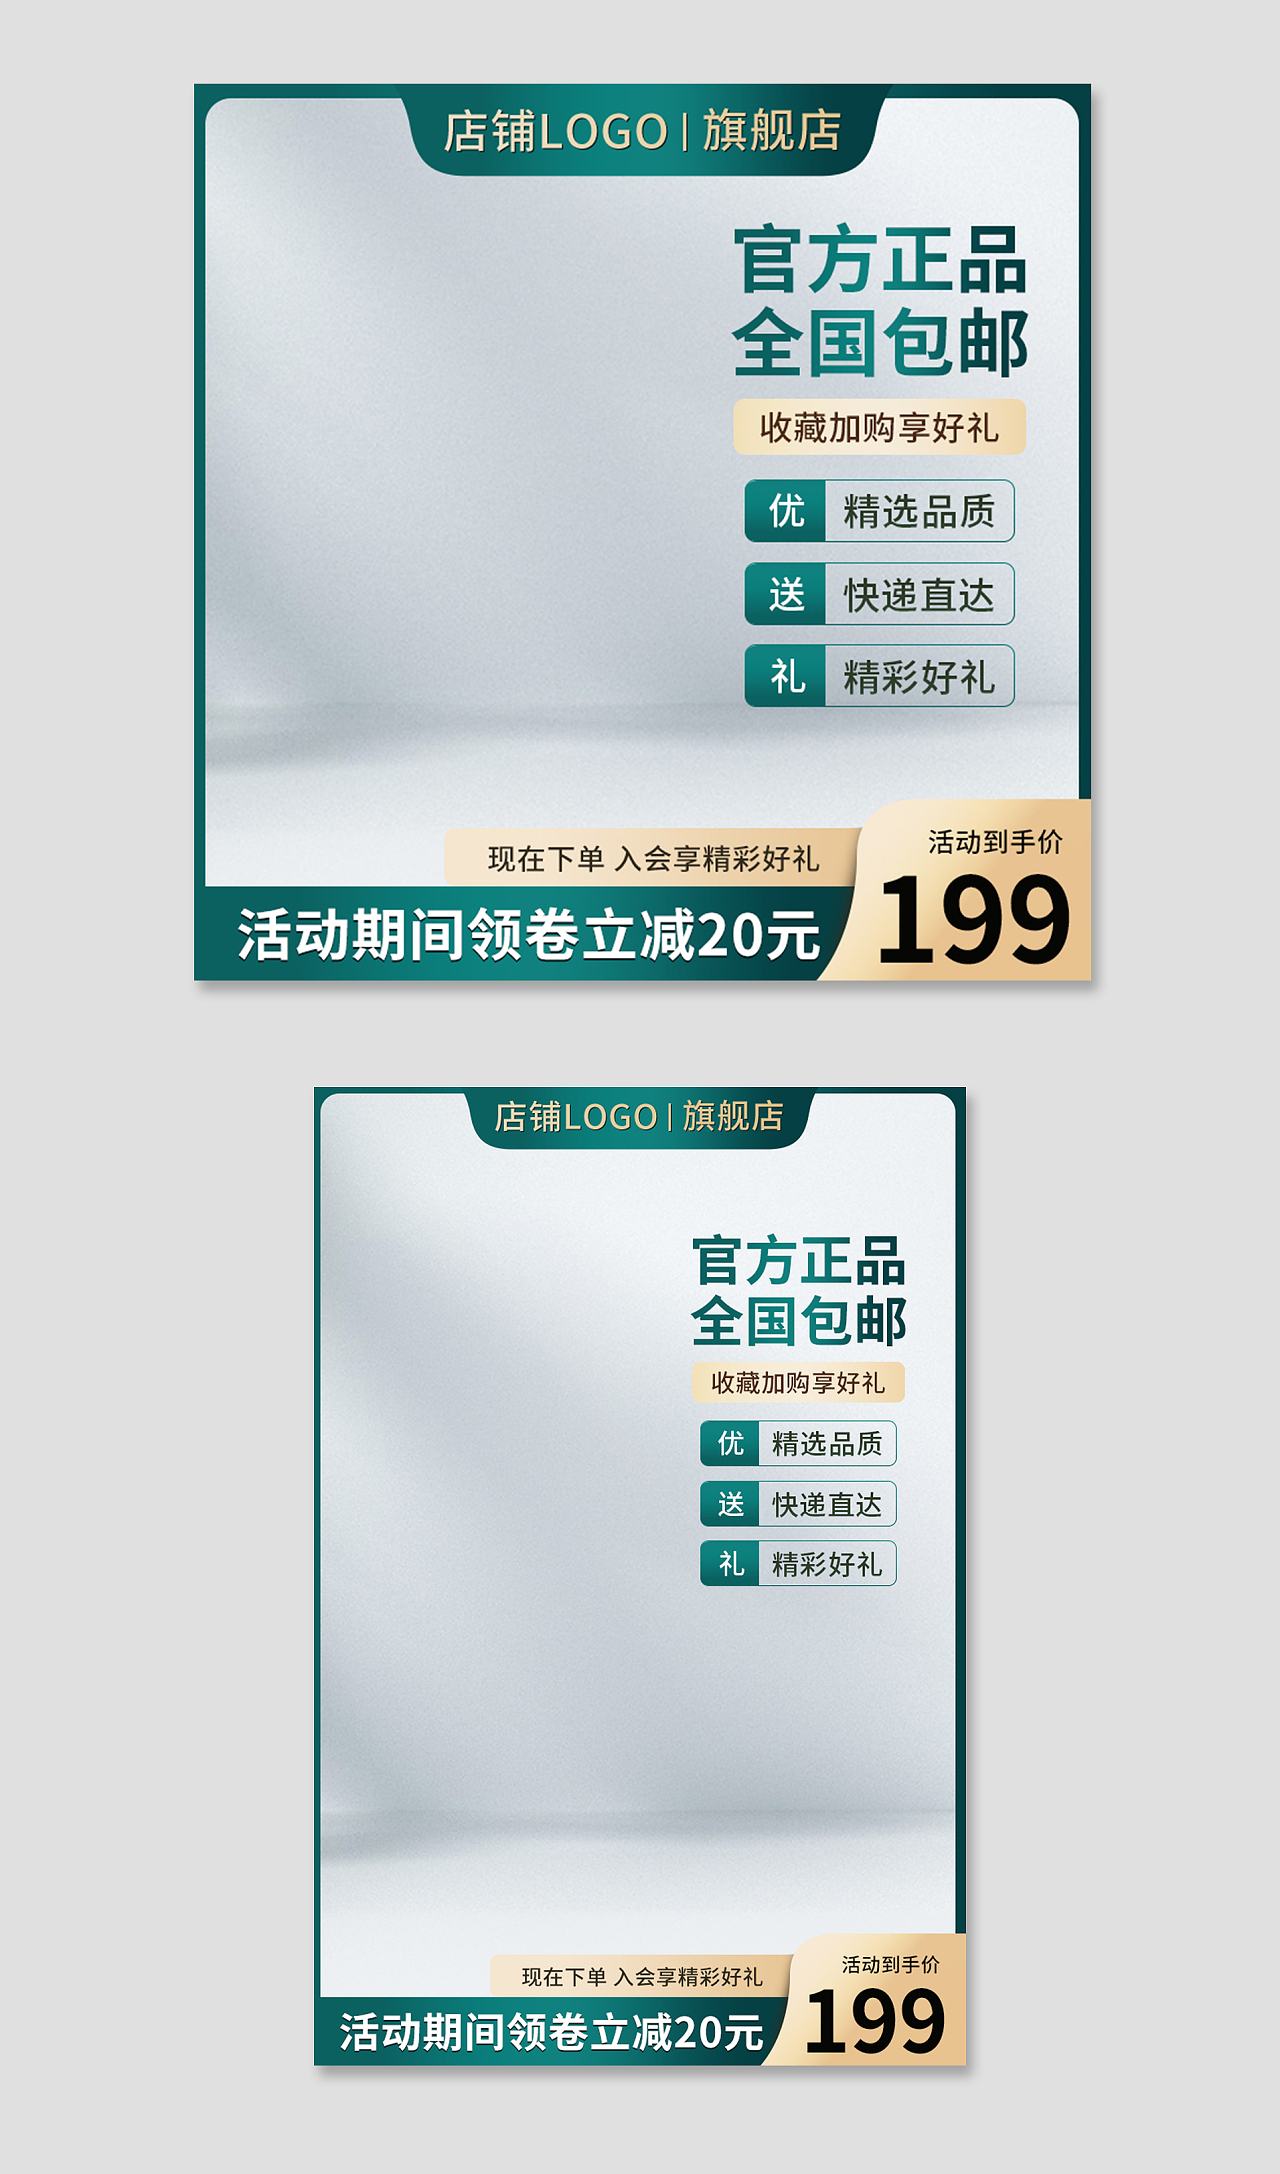 绿色简约官方正品全国包邮电商淘宝天猫京东品牌活动促销主图